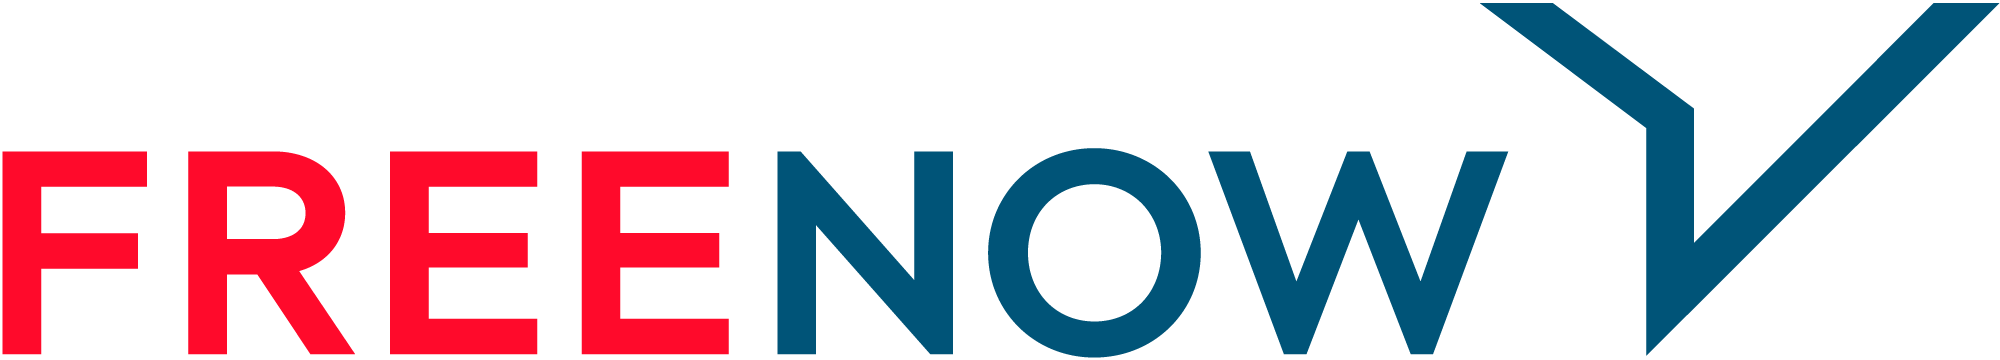 Free Now logo